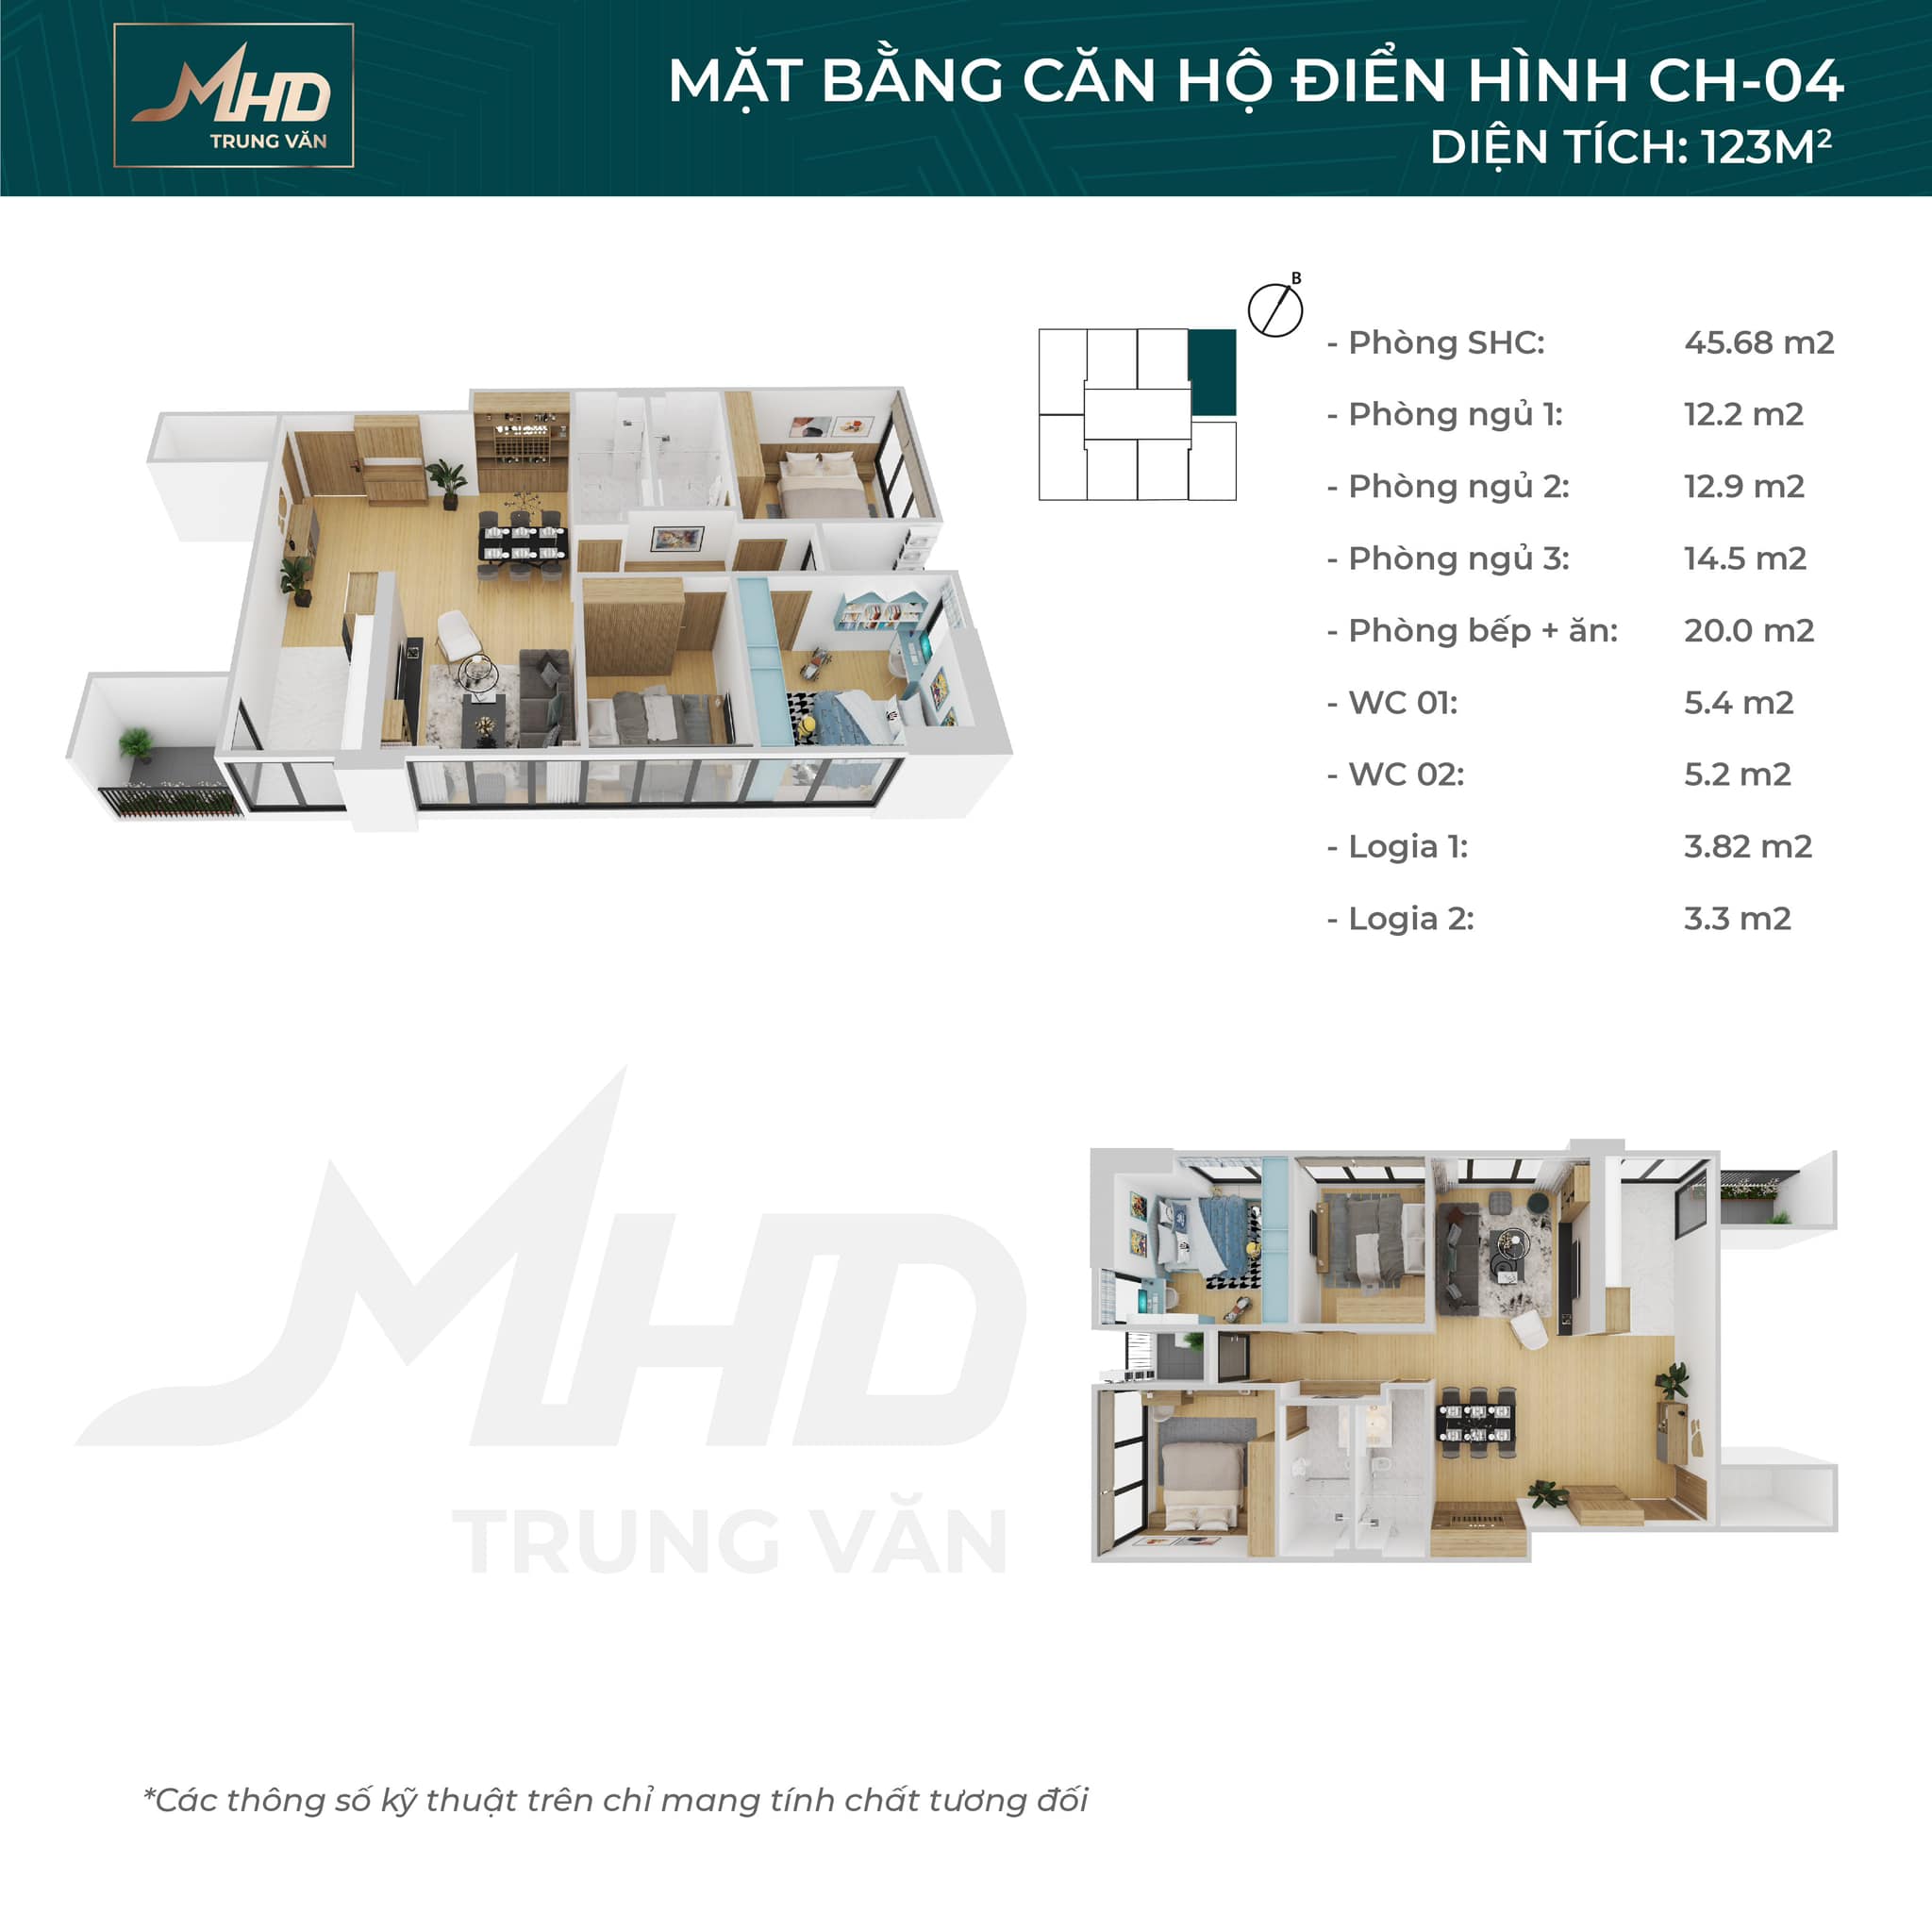 Bán căn 3 ngủ + 1 thiết kế đẹp nhất, view đẹp nhất dự án MHD Trung Văn - 29 Tố Hữu. LH 0934 306 262 5